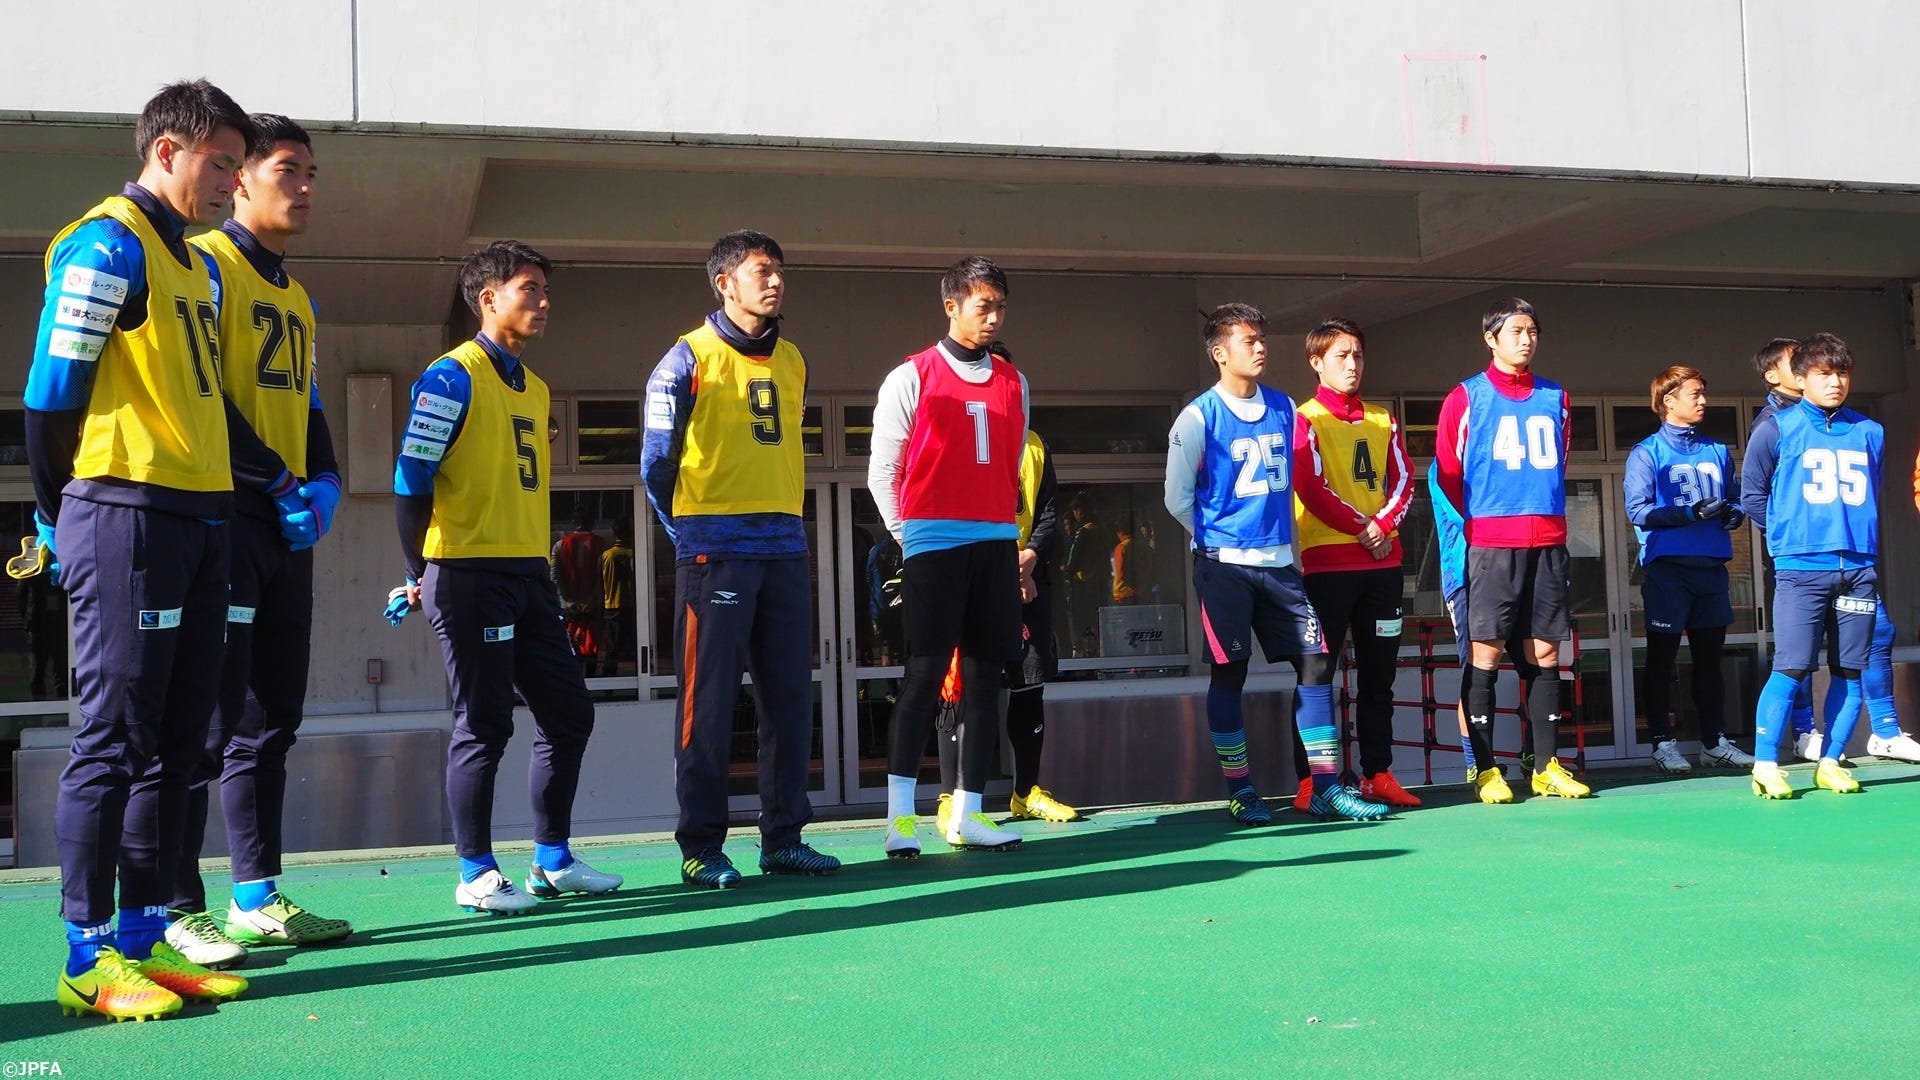 毎年恒例のjpfa合同トライアウト開催 初日には54名が参加 Goal Com 日本